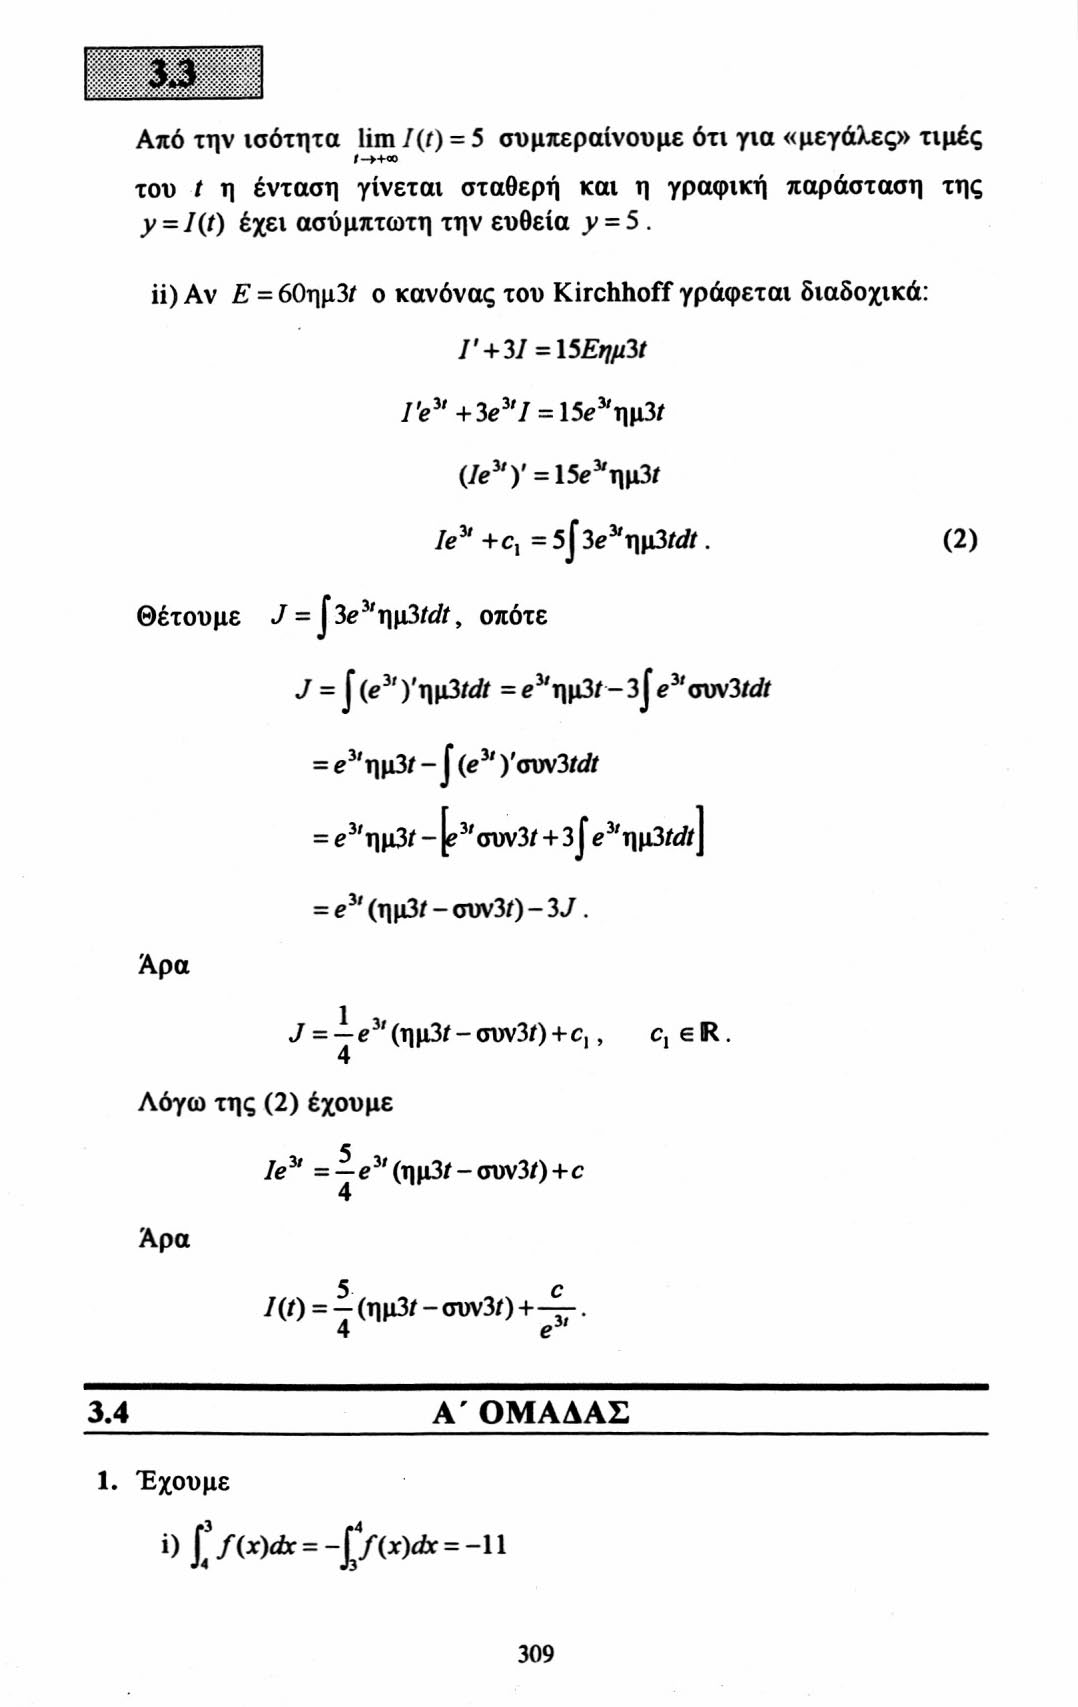 Από την ισότητα lim 7(ί) = 5 συμπεραίνουμε ότι για «μεγάλες» τιμές /->+ΟΟ του t η ένταση γίνεται σταθερή και η γραφική παράσταση της y = I(t) έχει ασύμπτωτη την ευθεία ^ = 5.